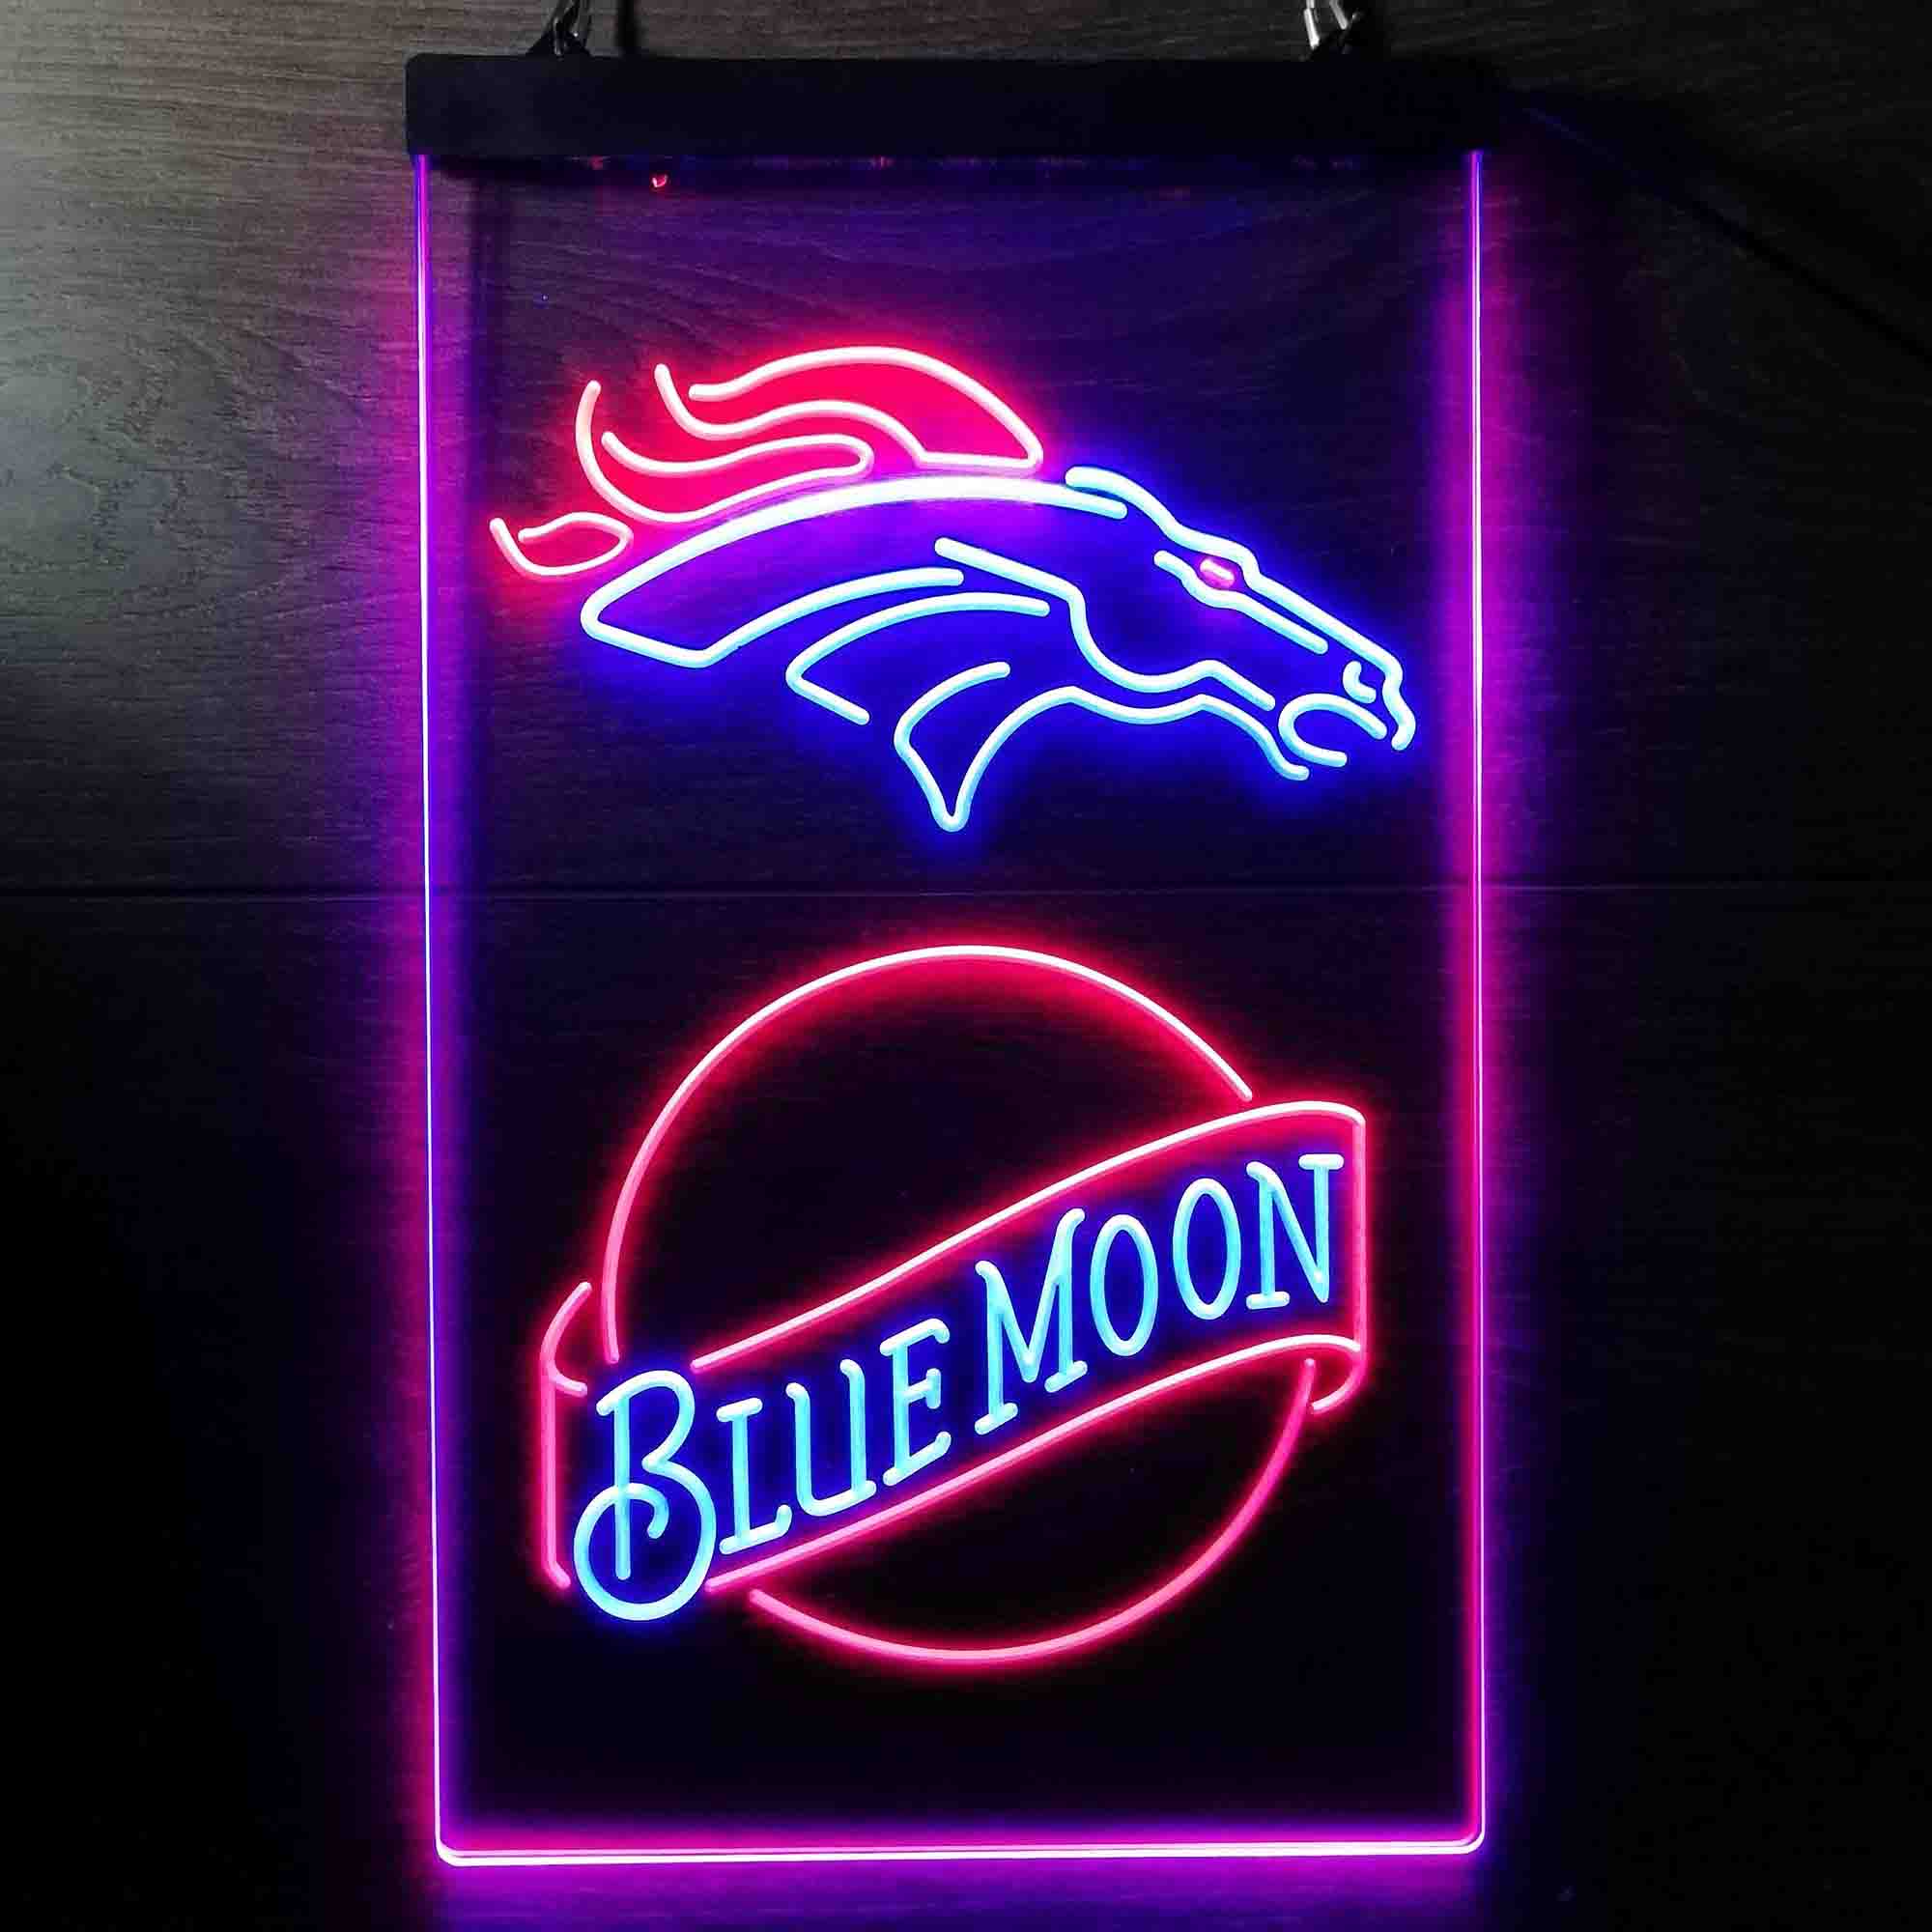 Blue Moon Bar Denver Broncos Est. 1960 LED Neon Sign